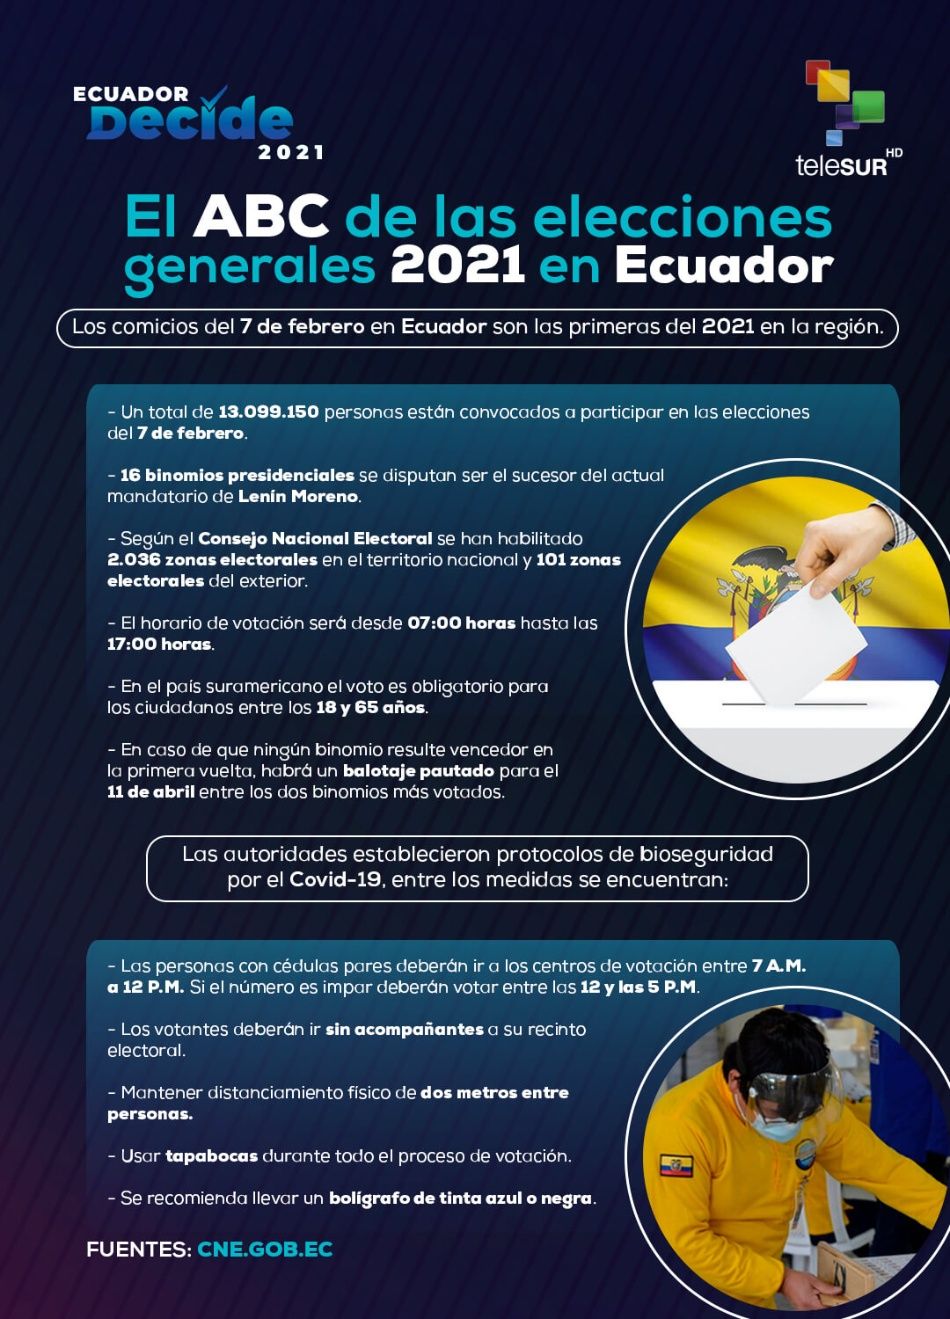 ABC de las elecciones de Ecuador 2021